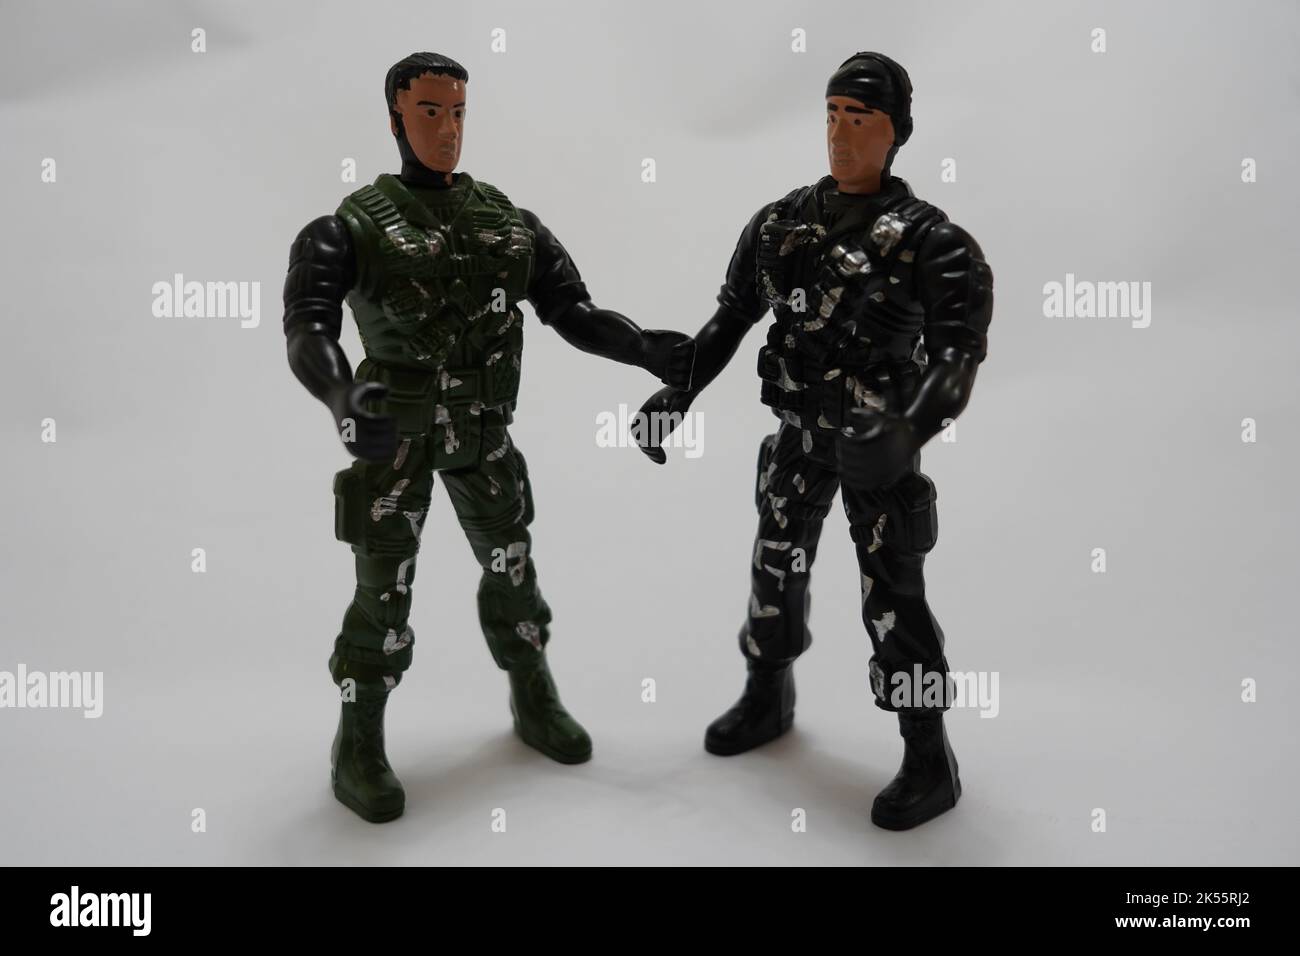 Zwei Soldaten Figuren argumentieren Konzept. Armymen in grüner Kampfuniform Stockfoto